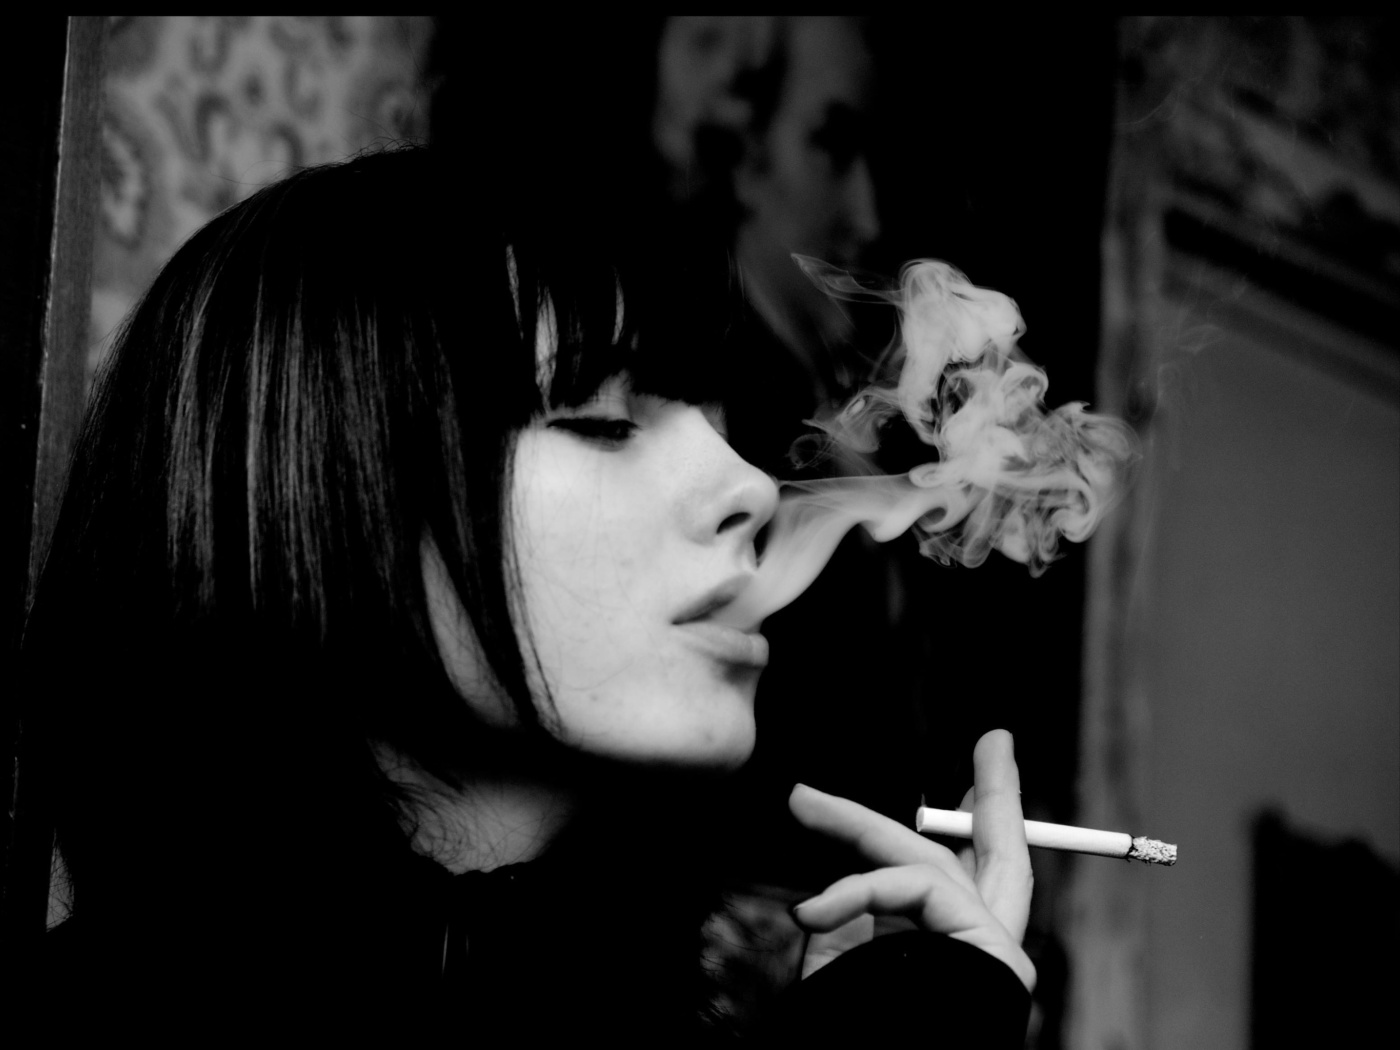 Das Black and white photo smoking girl Wallpaper 1400x1050